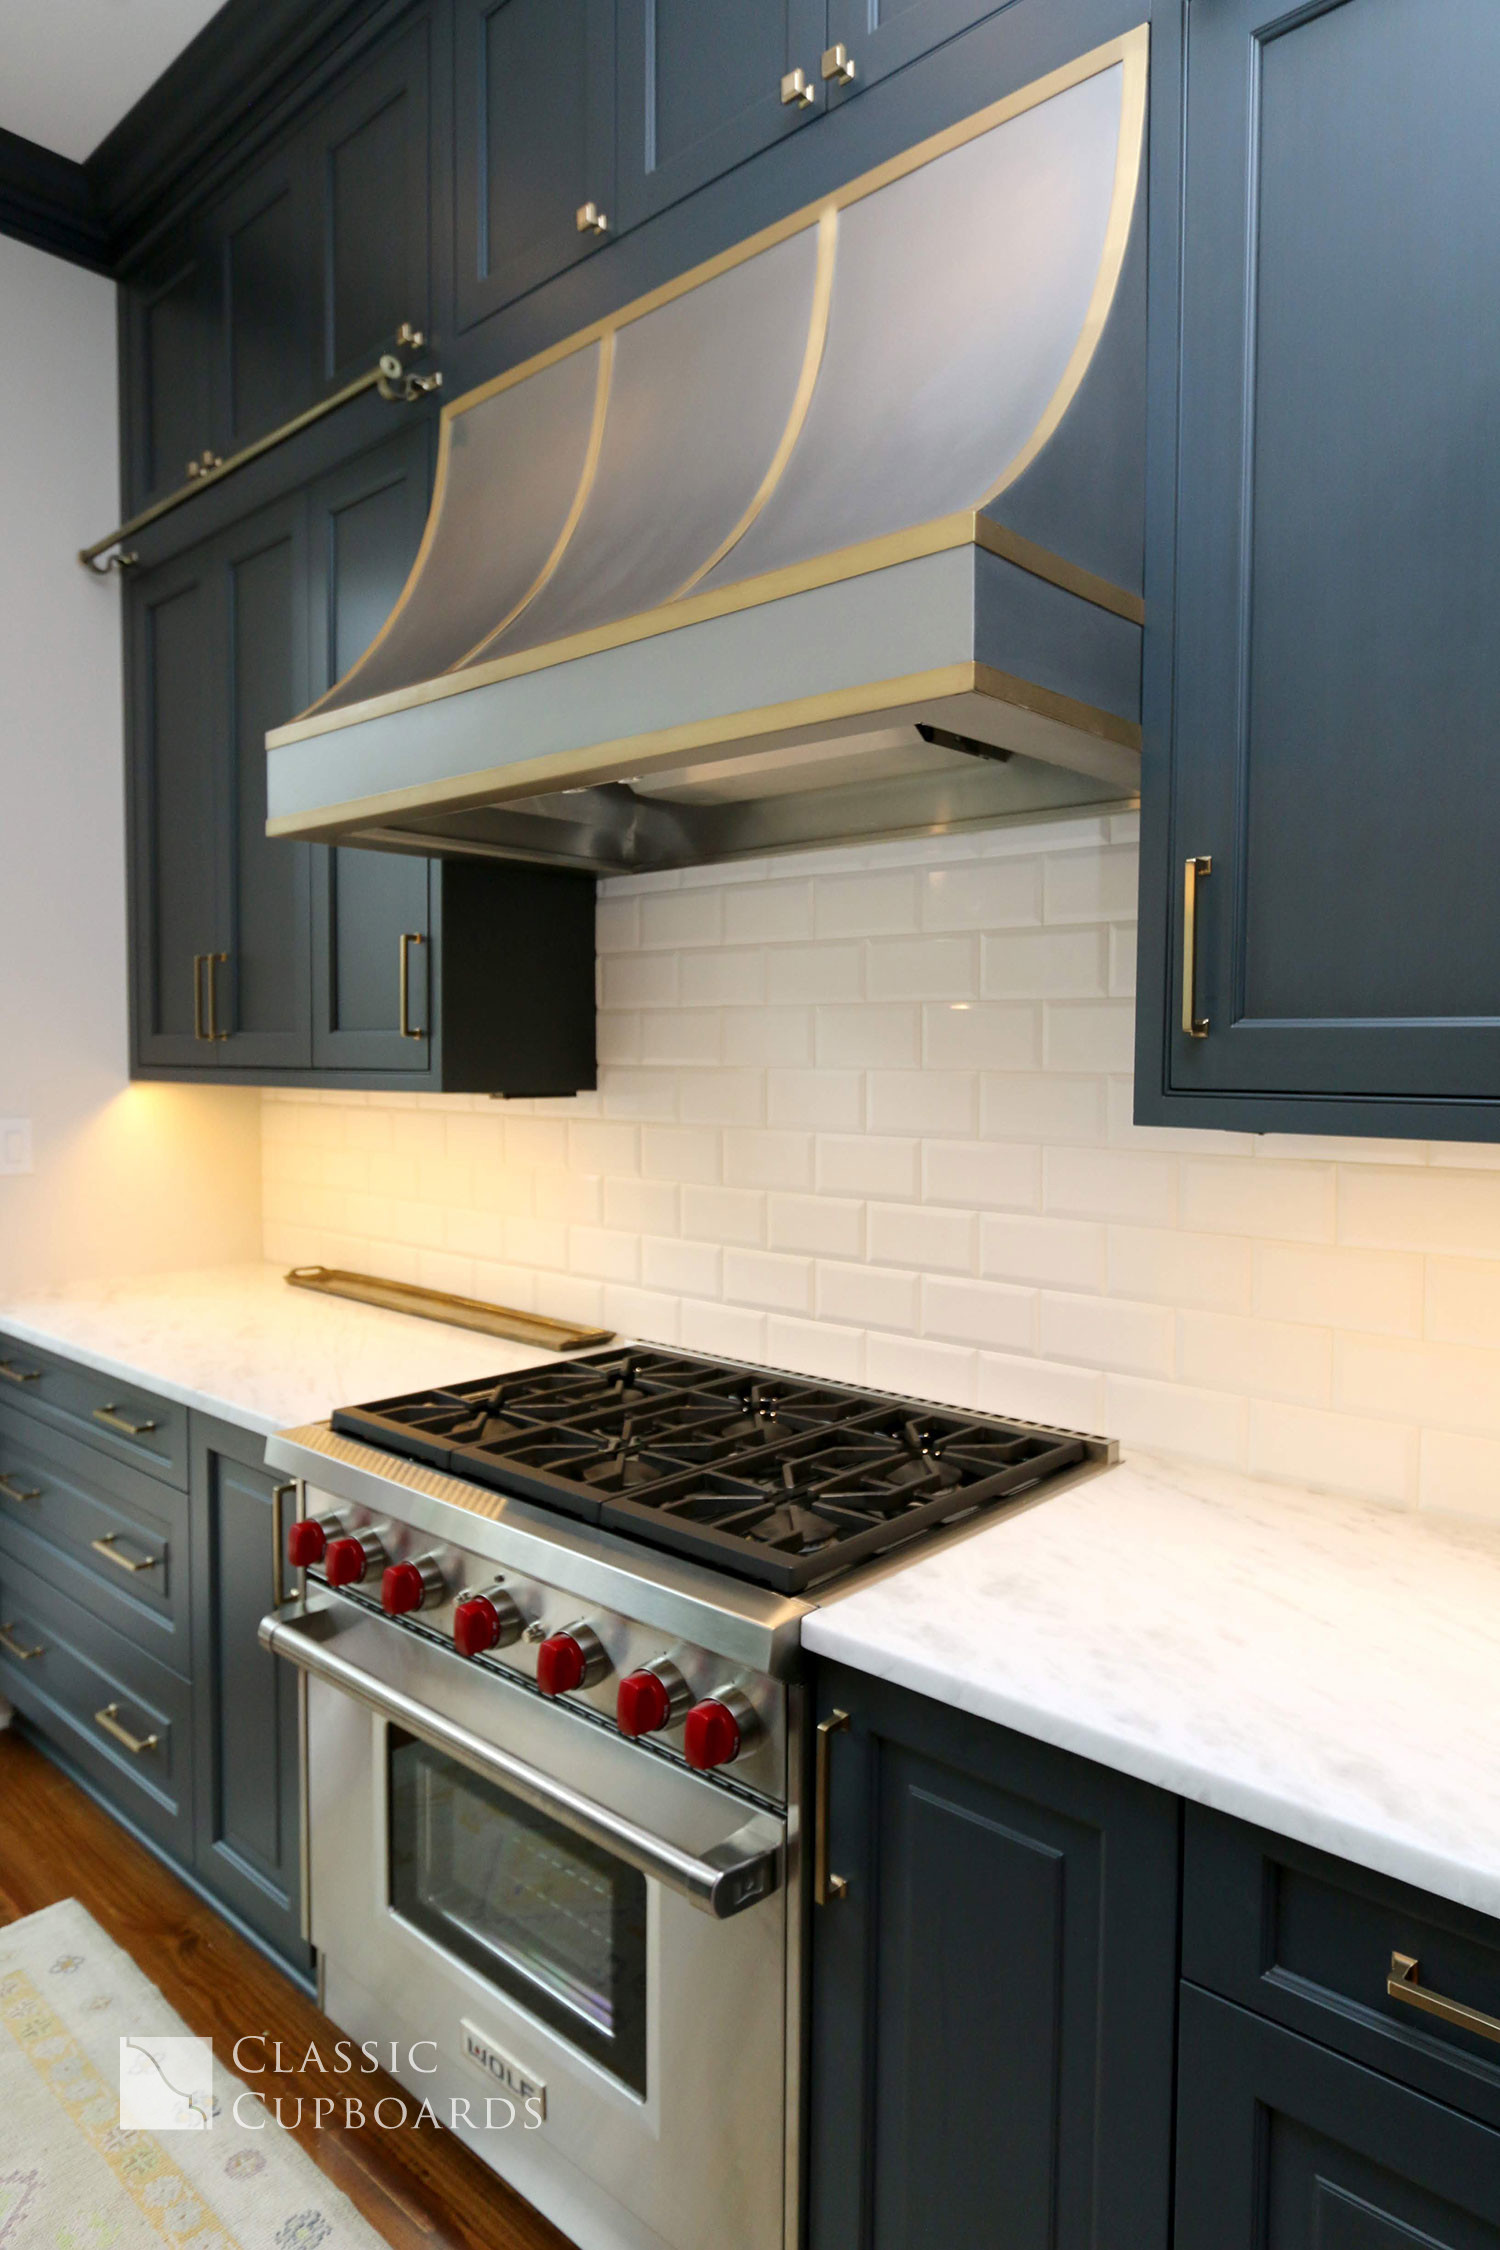 custom kitchen cabinets and stove